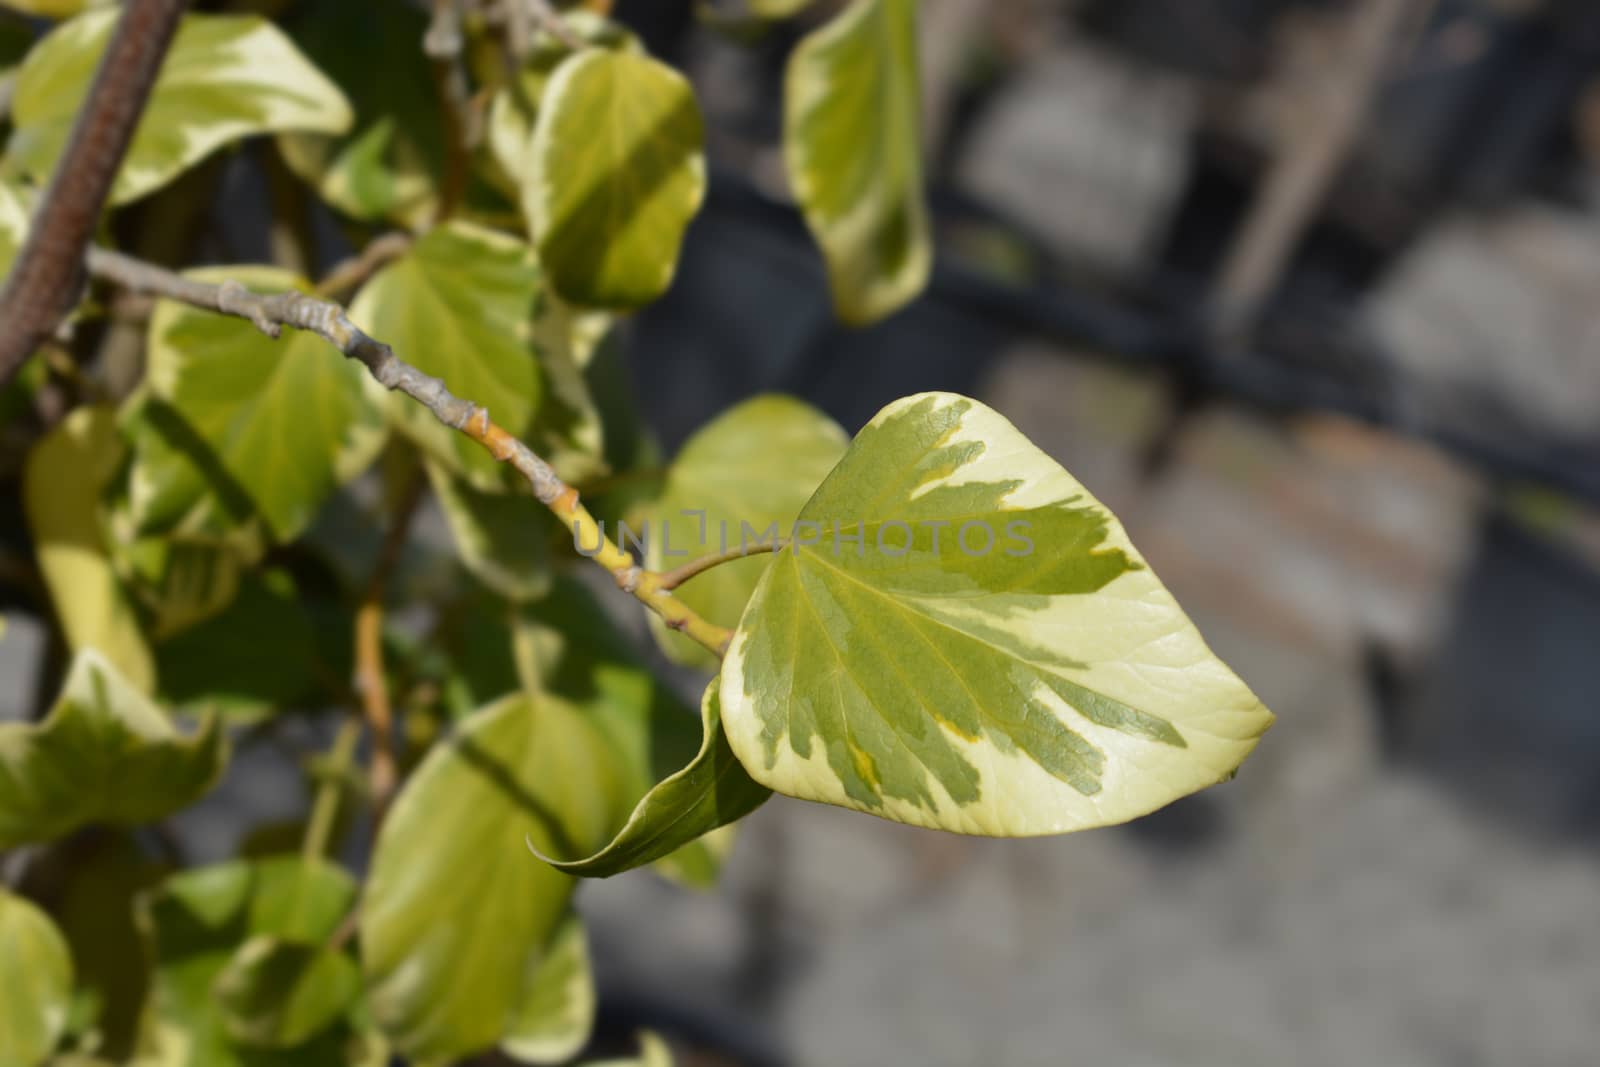 Ivy Dentata variegata - Latin name - Hedera colchica Dentata variegata (syn. Hedera colchica Dentata aurea)